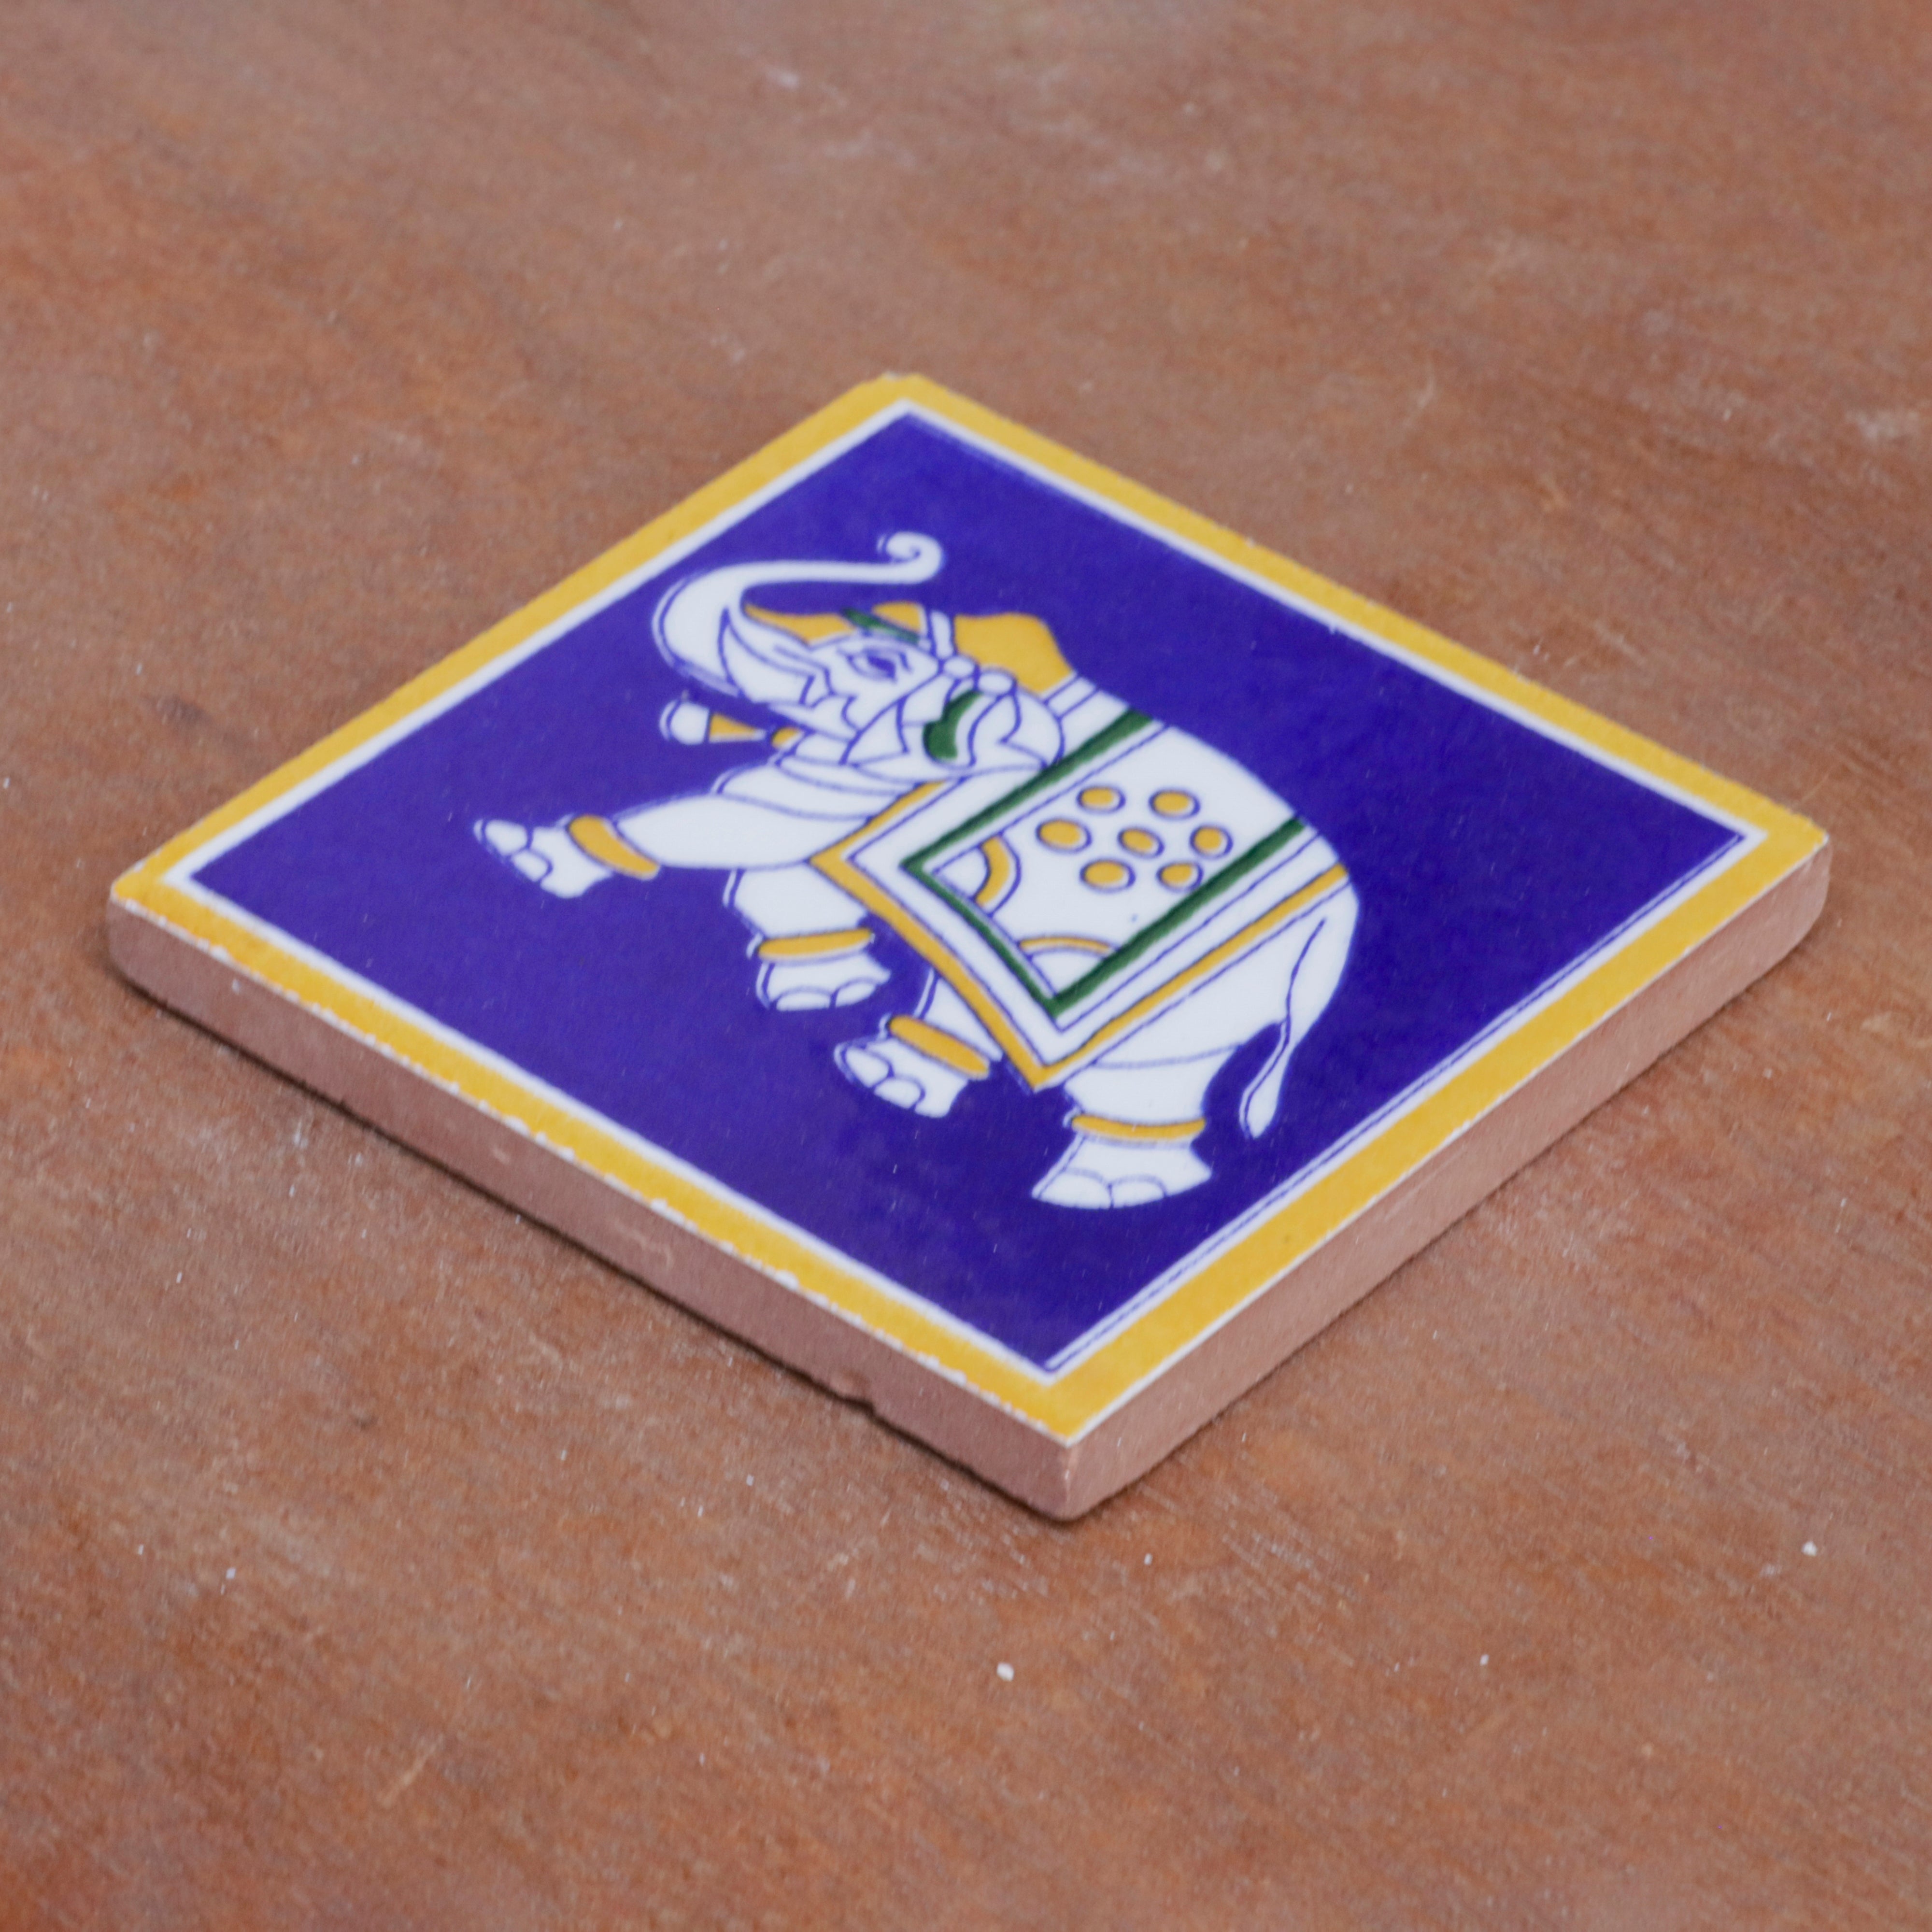 Vintage Clever Elephant Designed Ceramic Square Tile Set of 2 Ceramic Tile